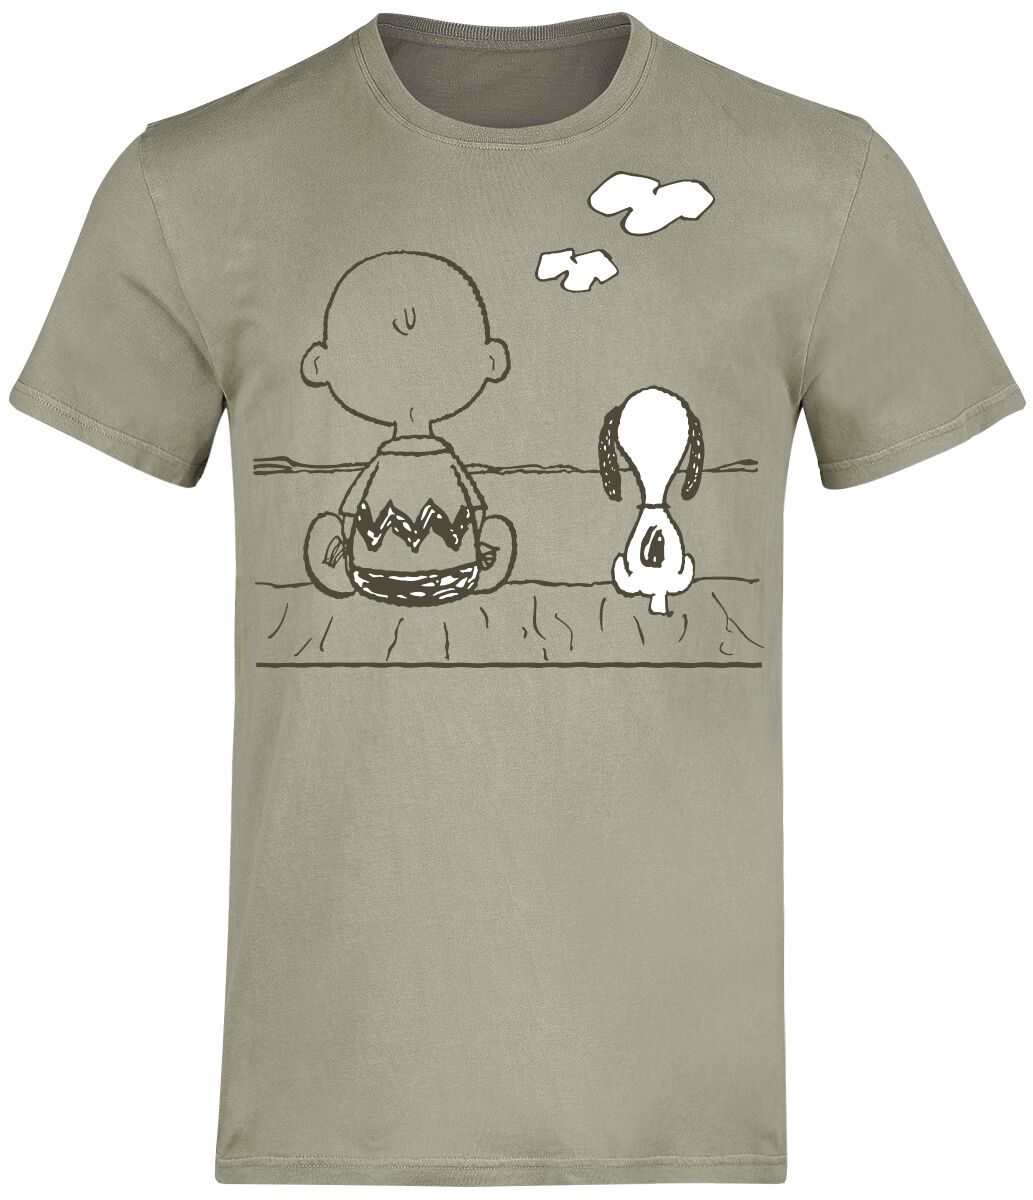 Peanuts T-Shirt - Charlie Brown und Snoopy - S bis 3XL - für Männer - Größe L - grün  - EMP exklusives Merchandise!